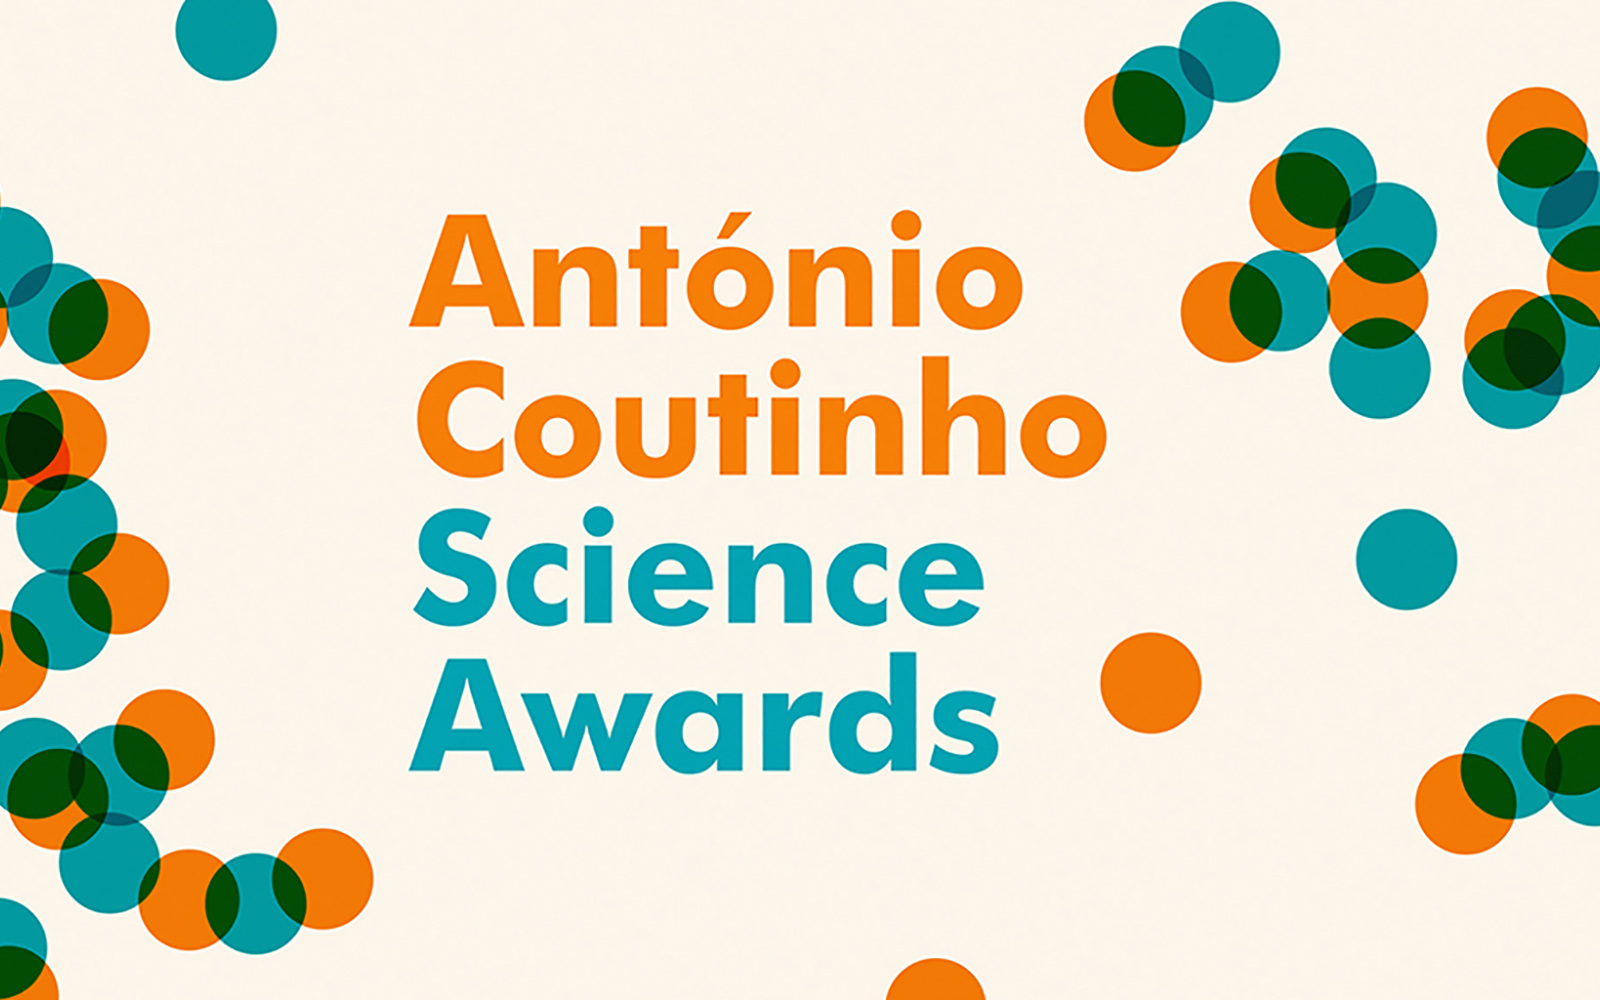 António Coutinho Science Awards